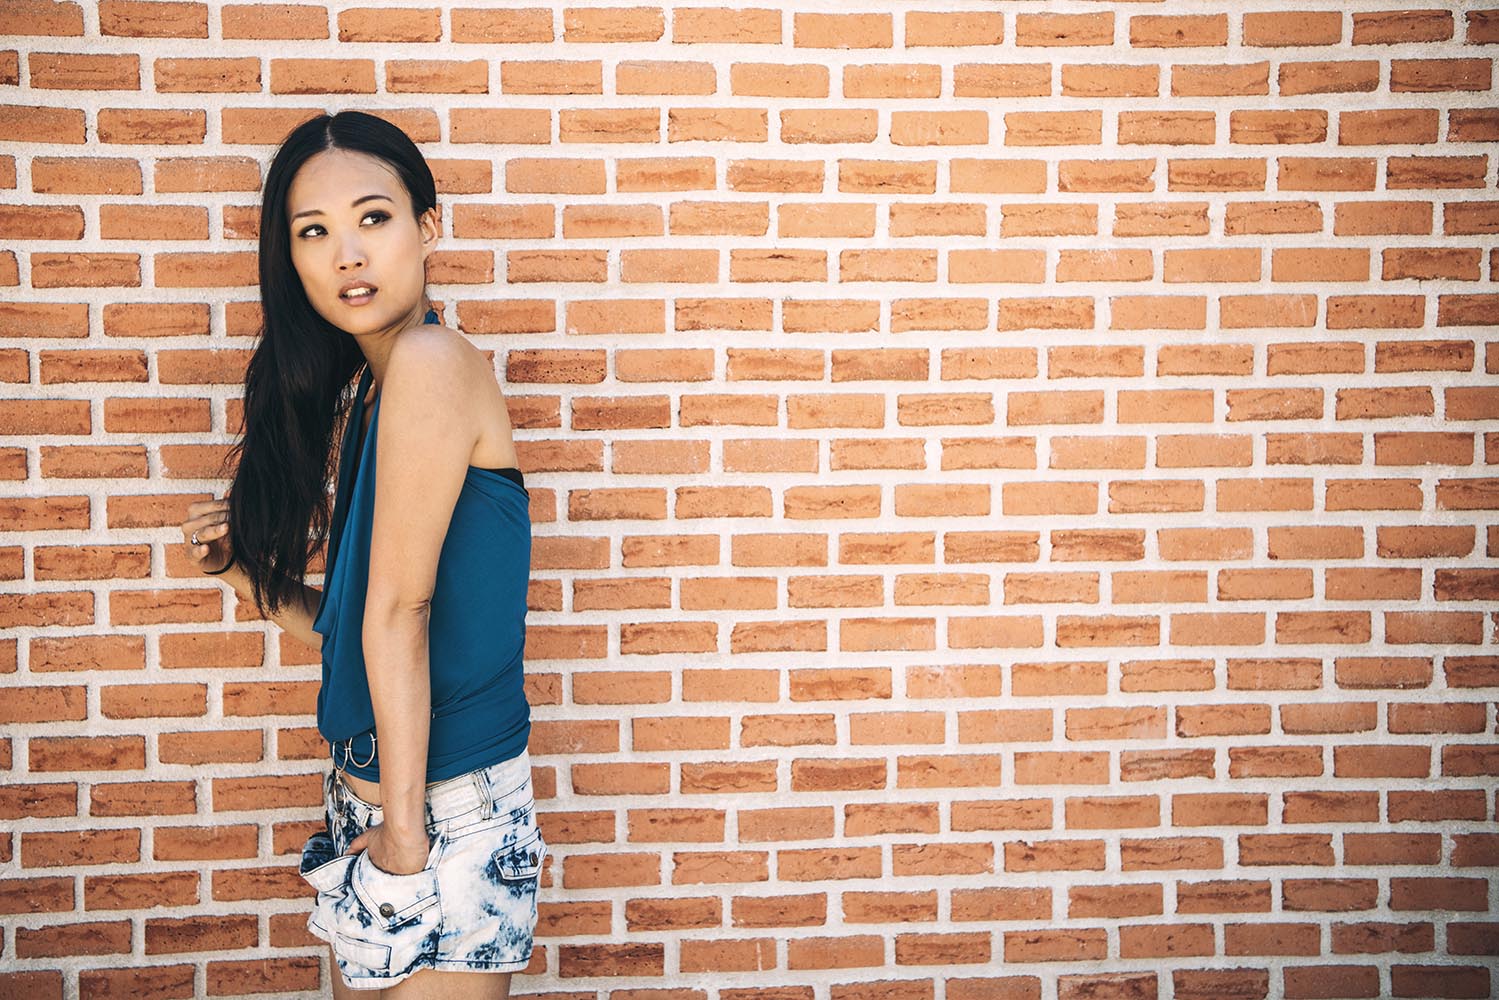 Sensual woman posing on brick wall